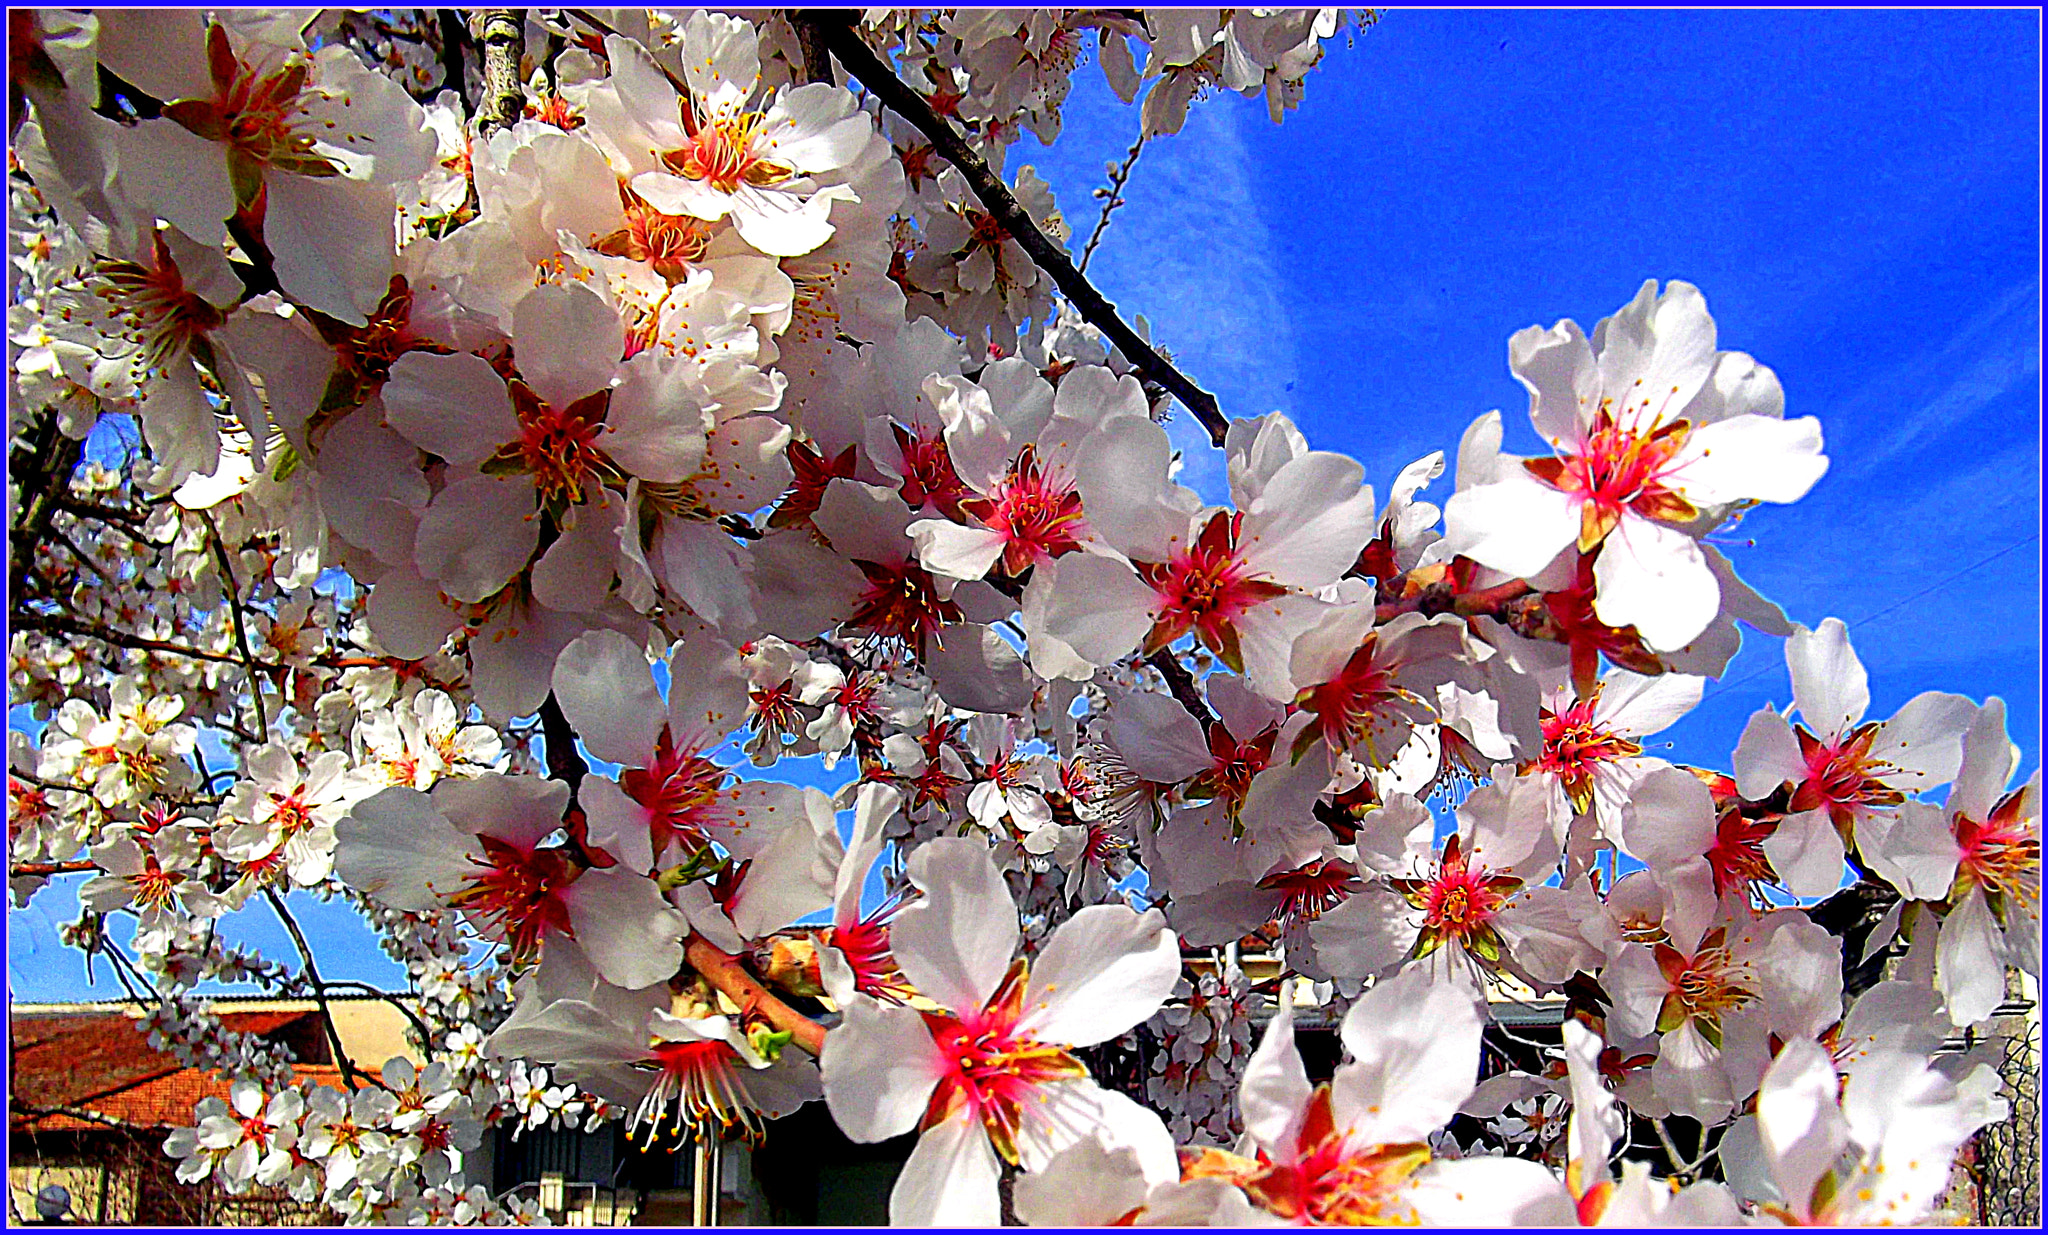 Fujifilm FinePix JX250 sample photo. Stupenda fioritura nel cielo azzurro velato, della primavera anticipata! photography